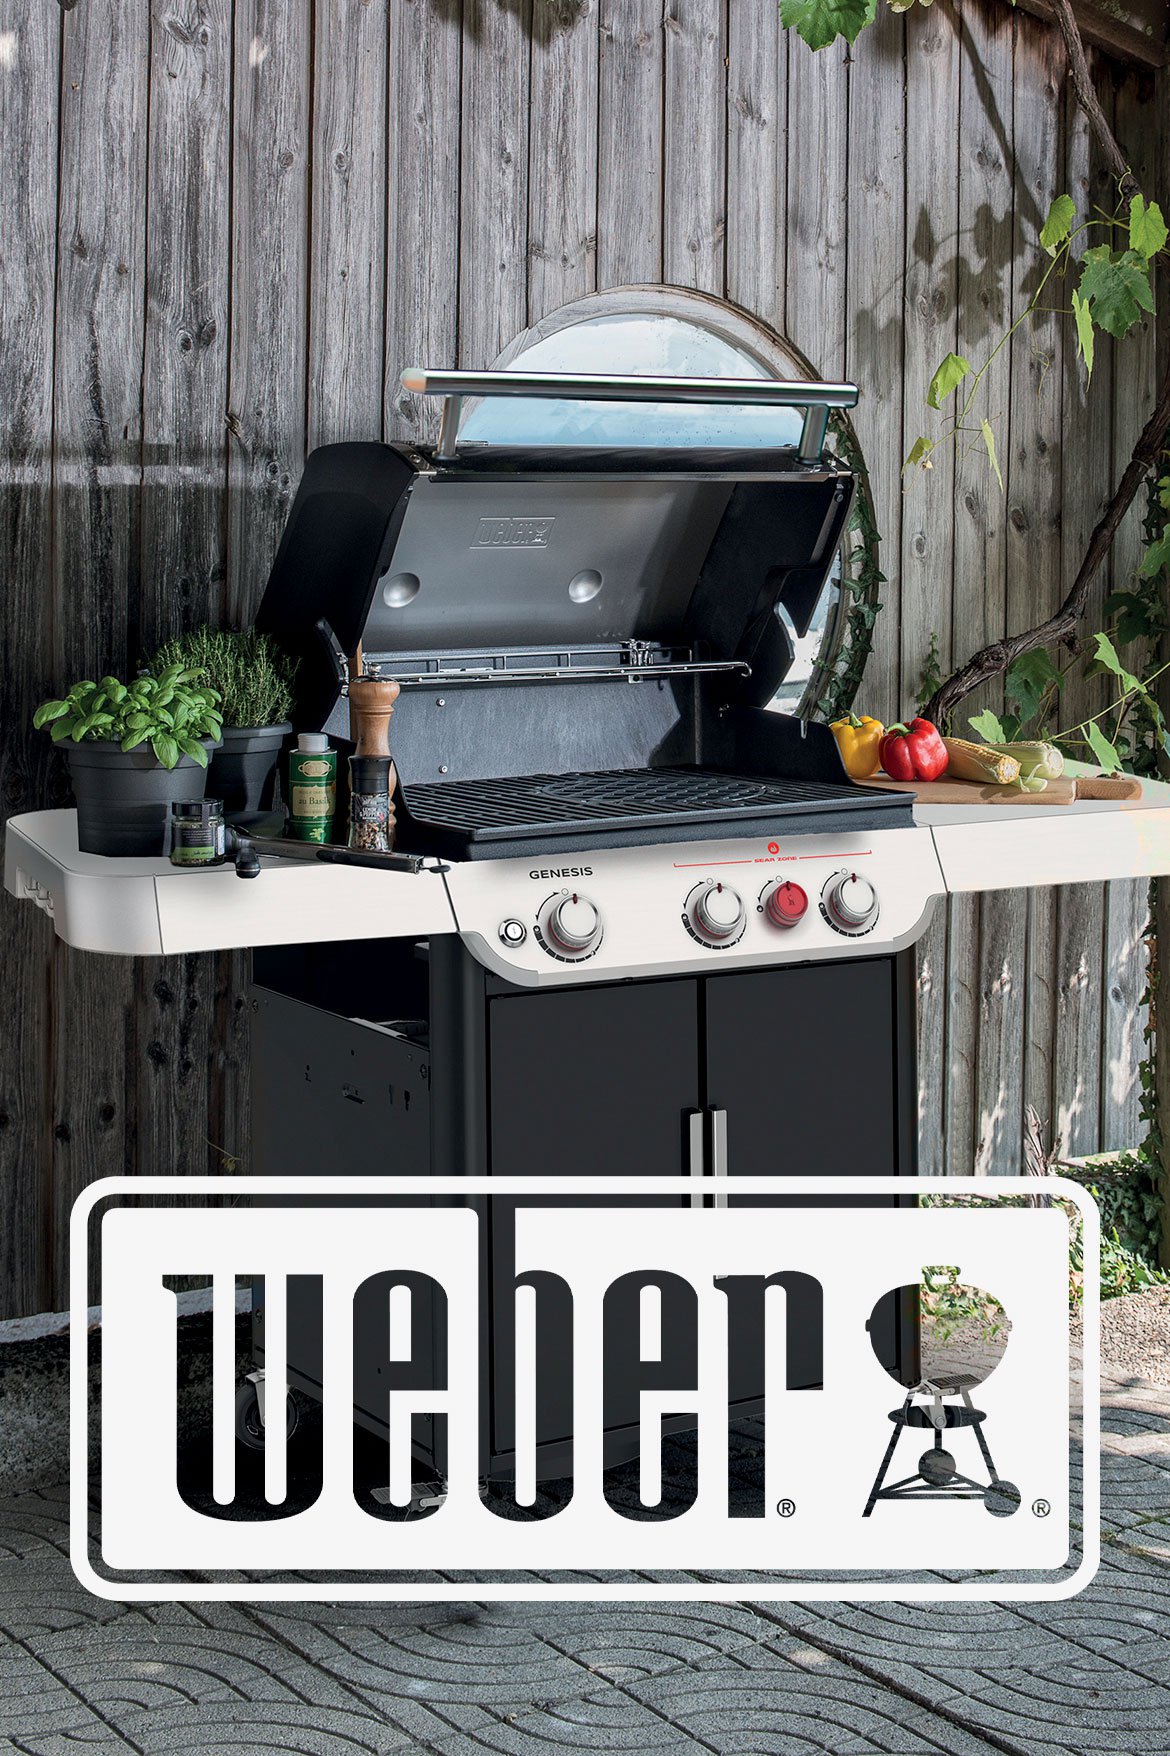 Weber - Leader du gril, barbecue - Schilliger